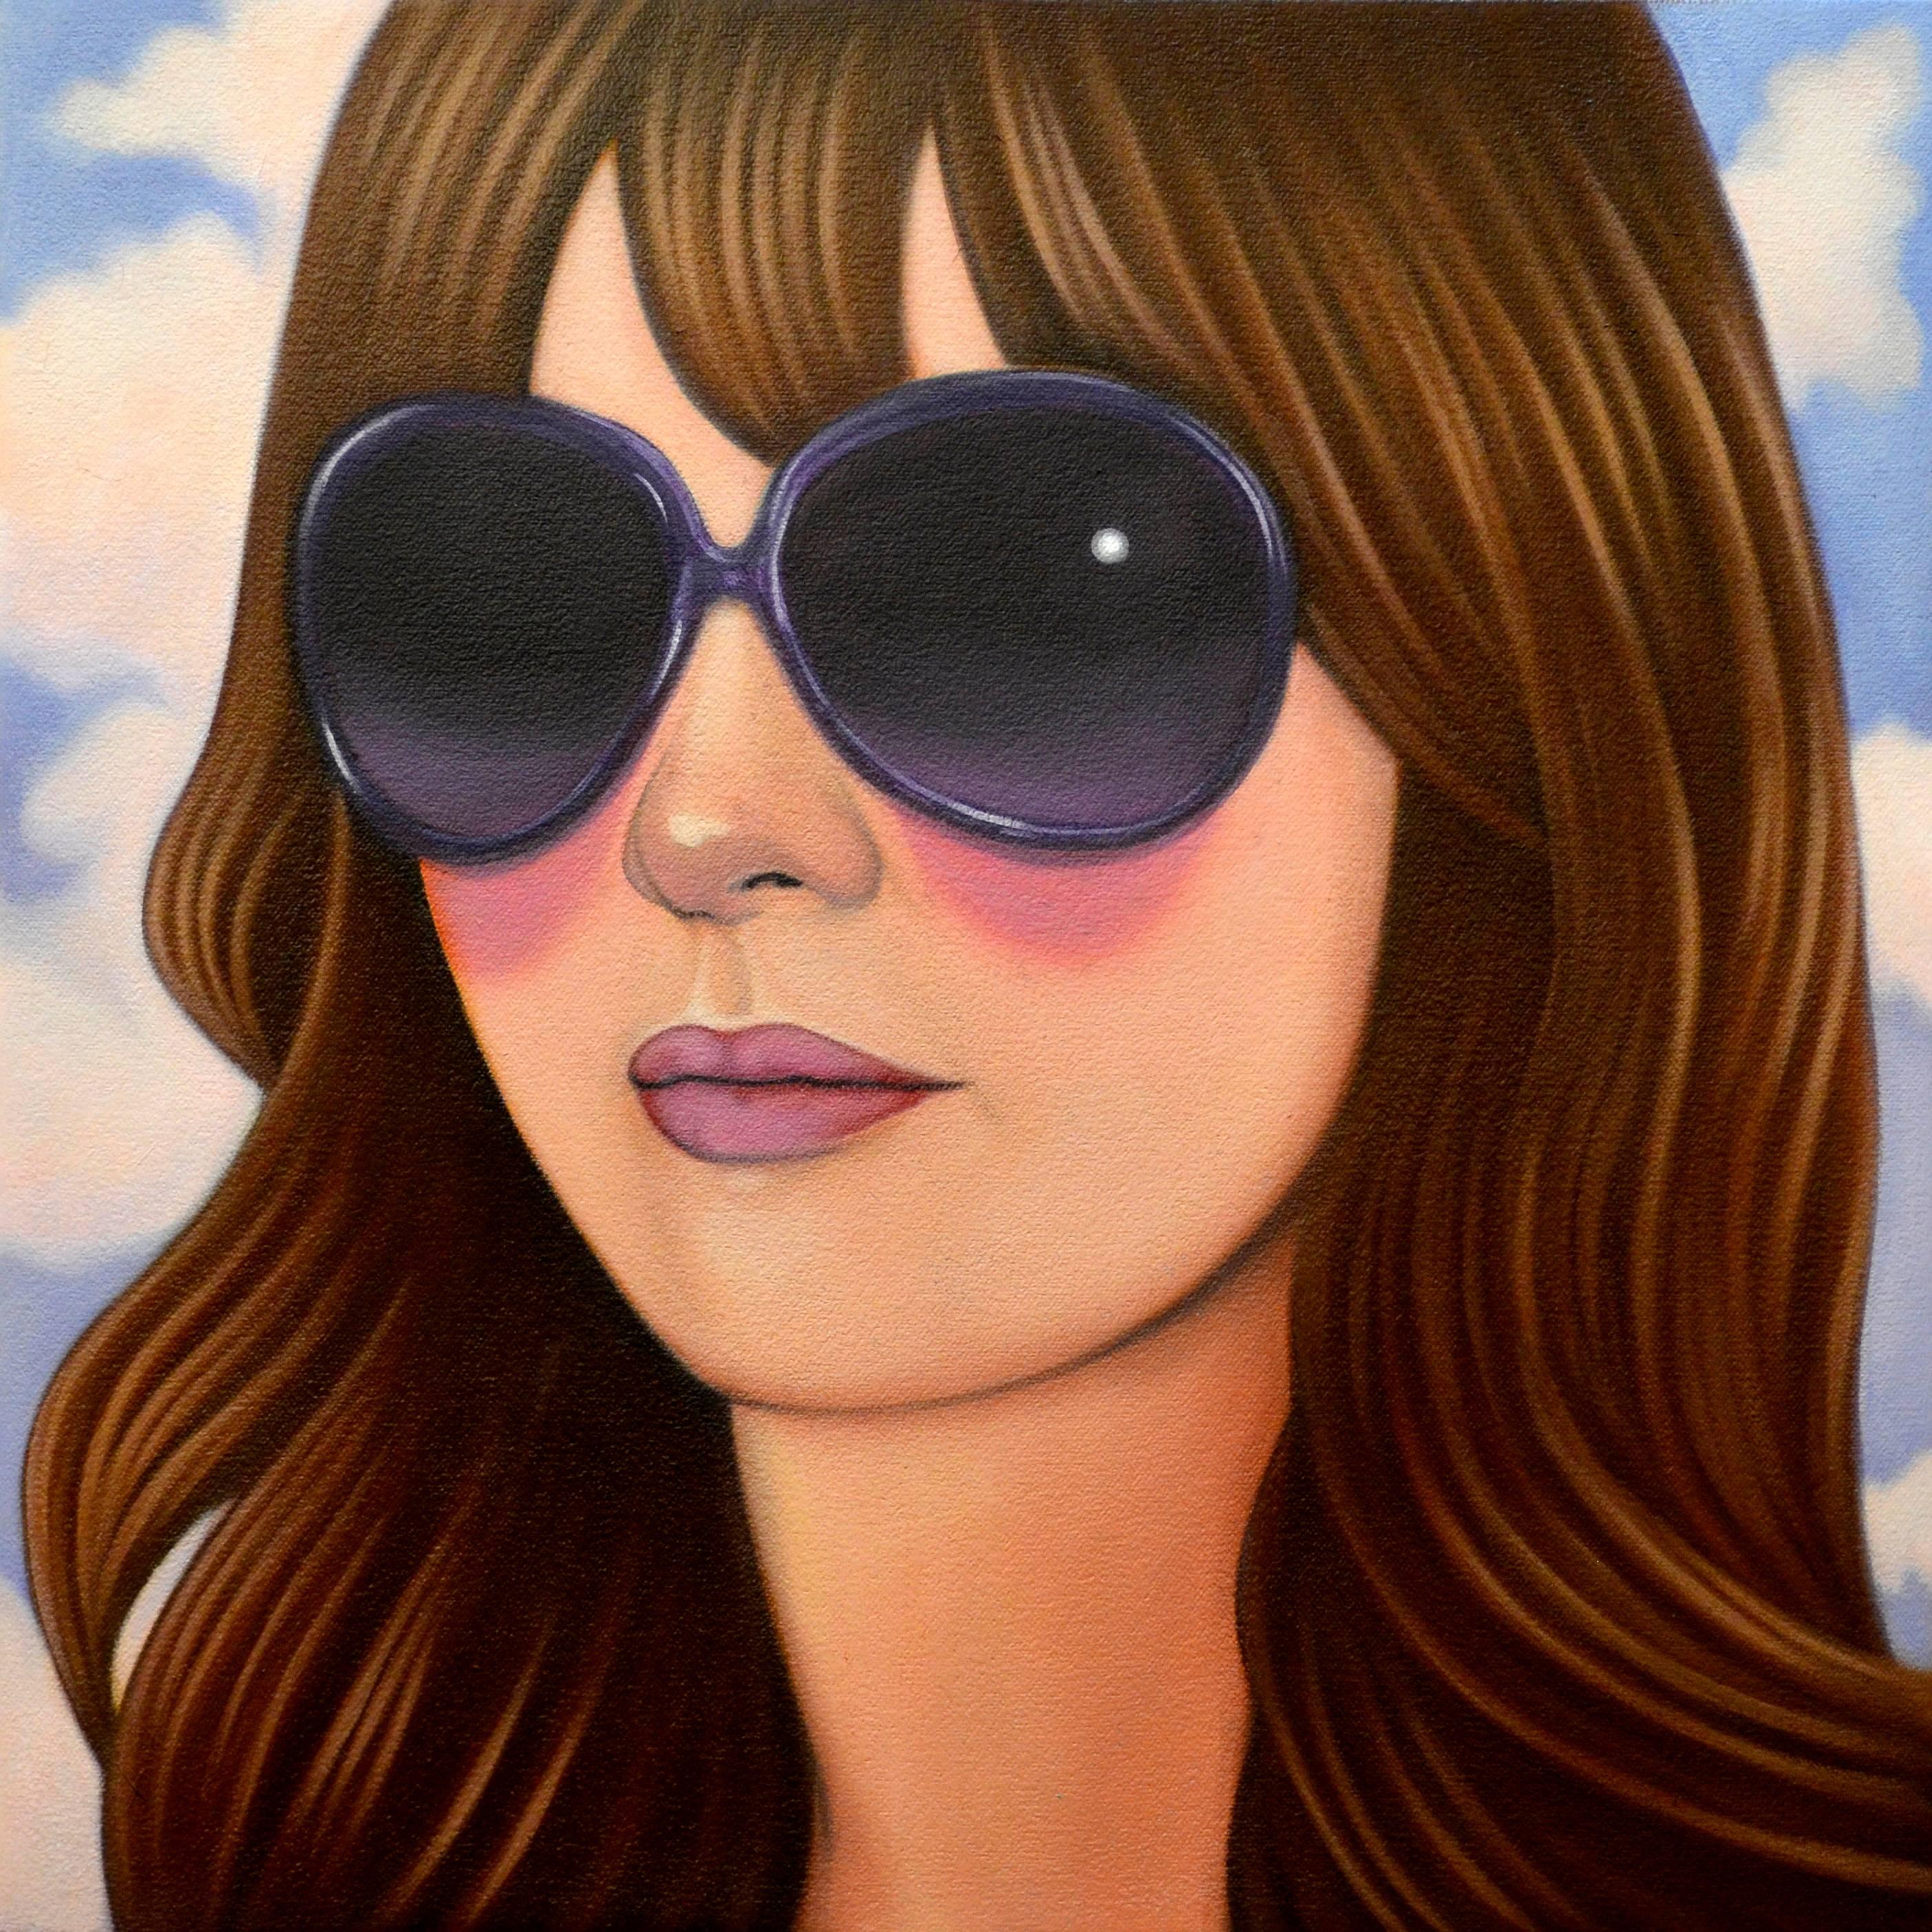 12 von Jeff Chester, realistisches Ölgemälde mit dem Gesicht einer Frau, die Sonnenbrille trägt